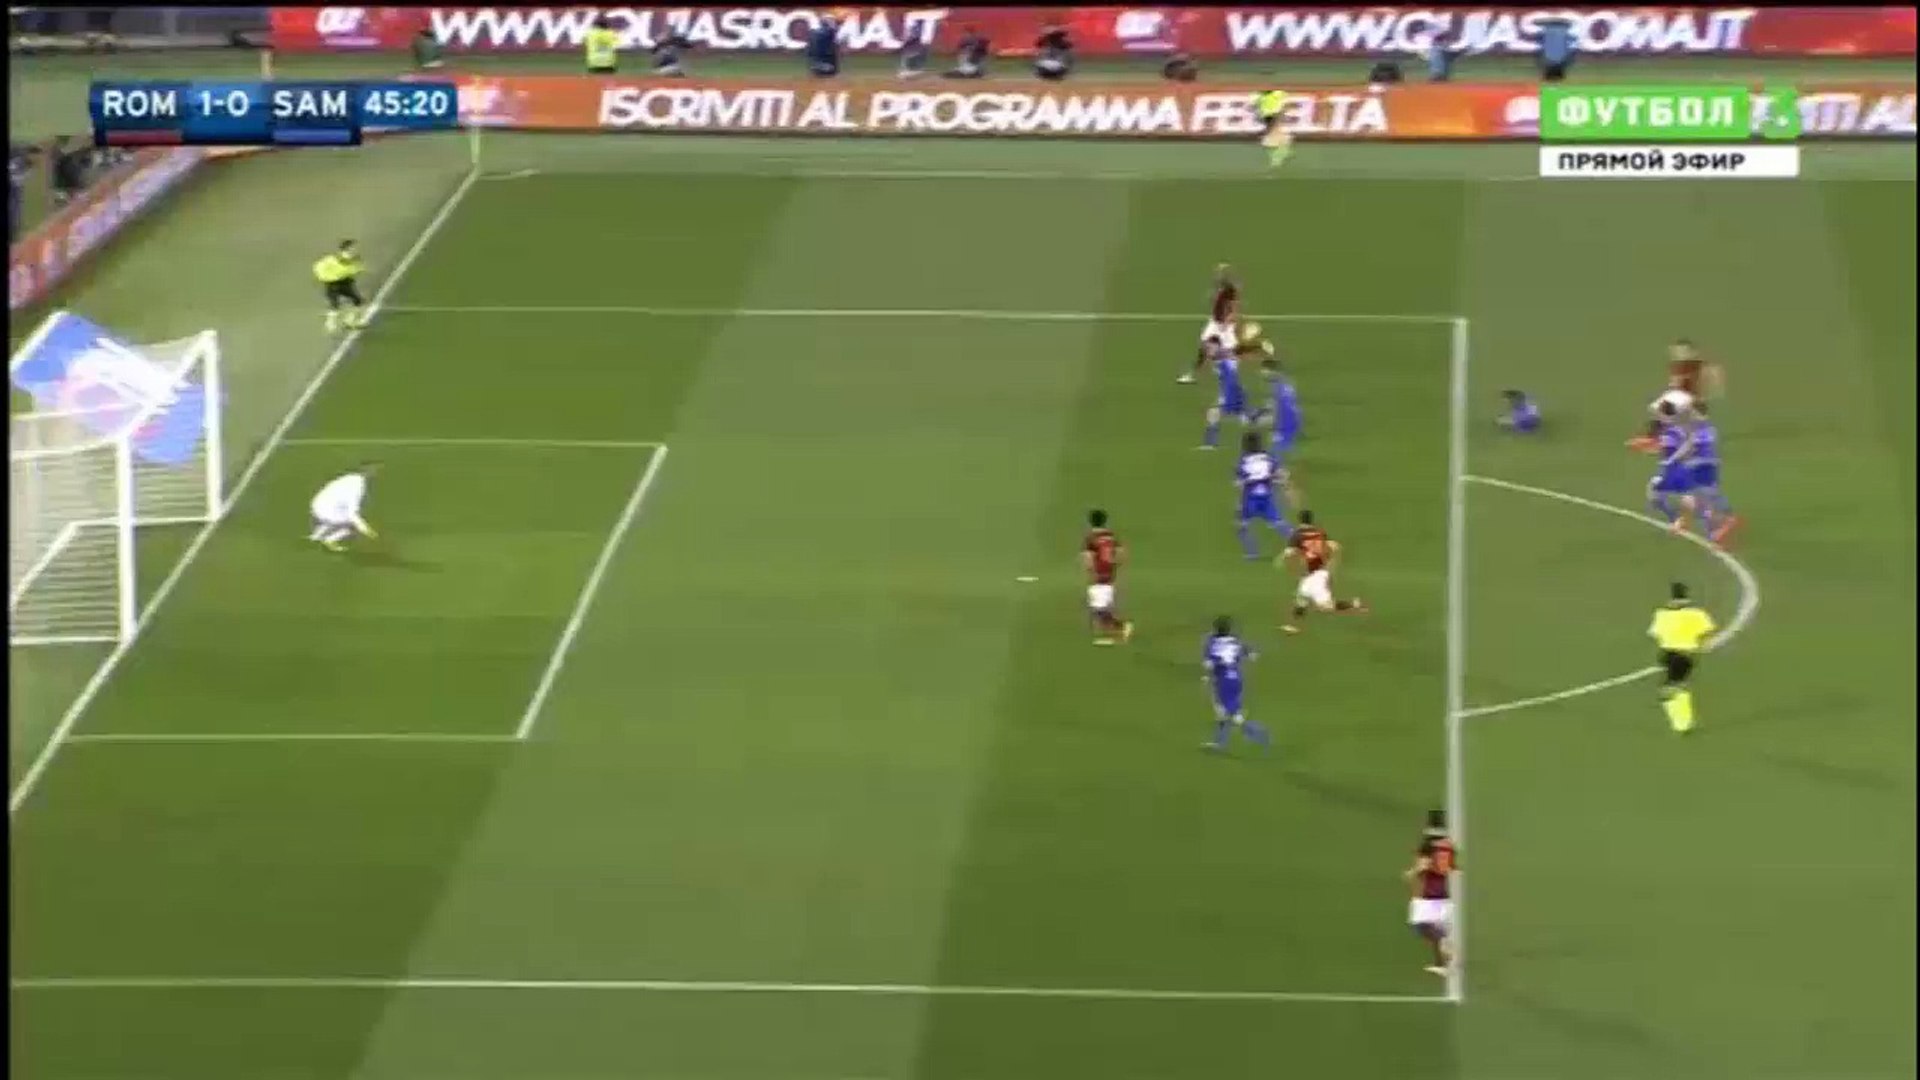 Roma vs Sampdoria 1-0 (Florenzi)